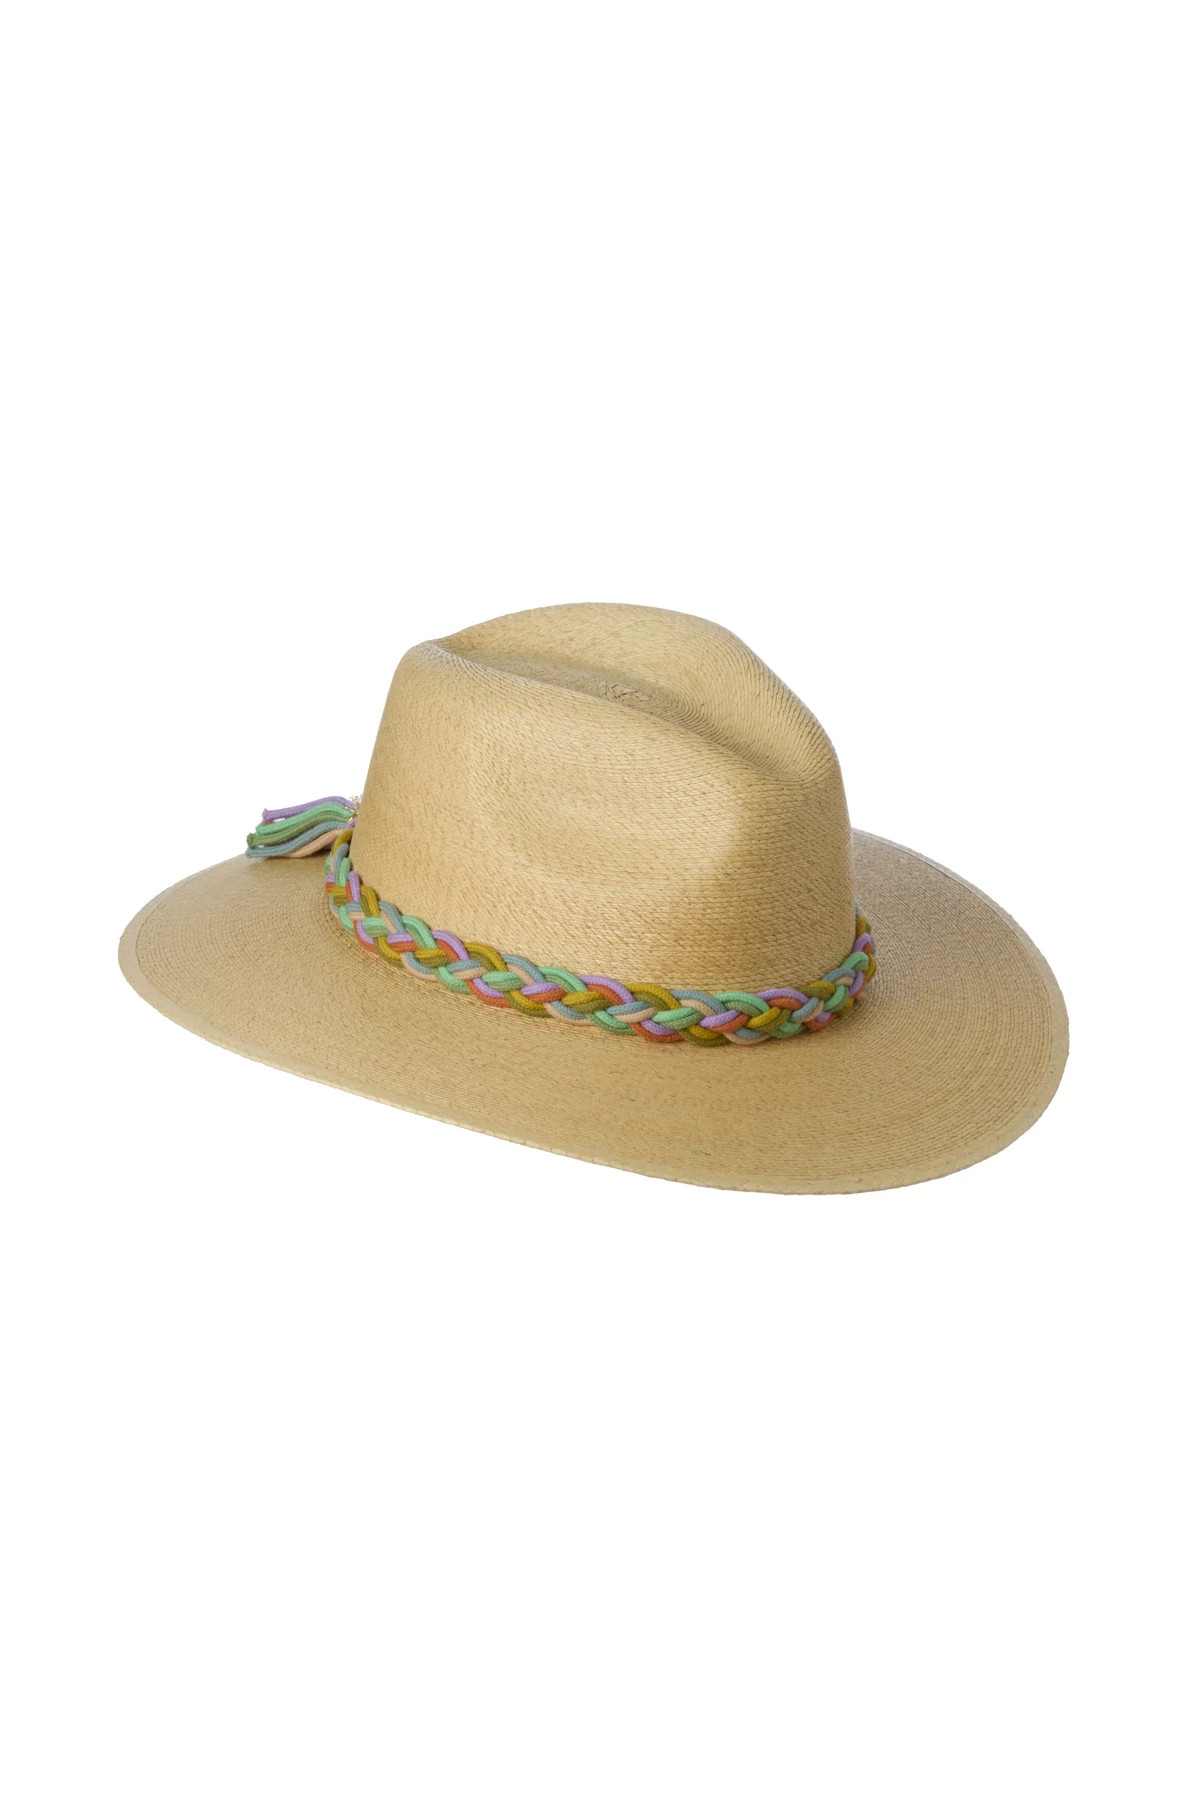 NATURAL Panama Sun Hat image number 1